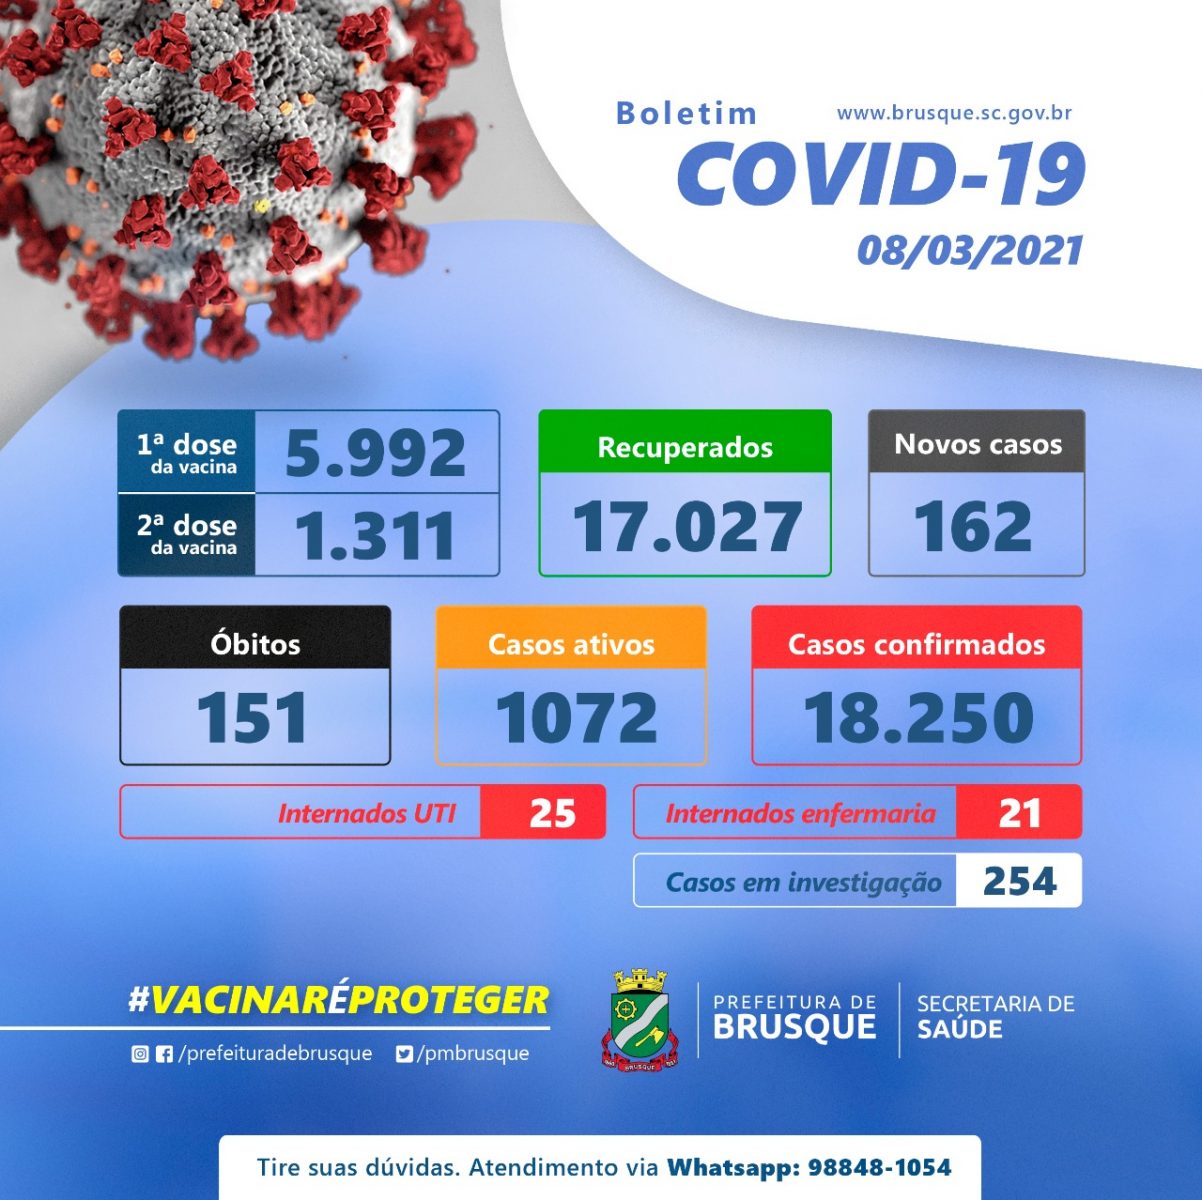 Boletim Covid-19: Nas últimas 24 horas foram registrados 162 novos casos da doença